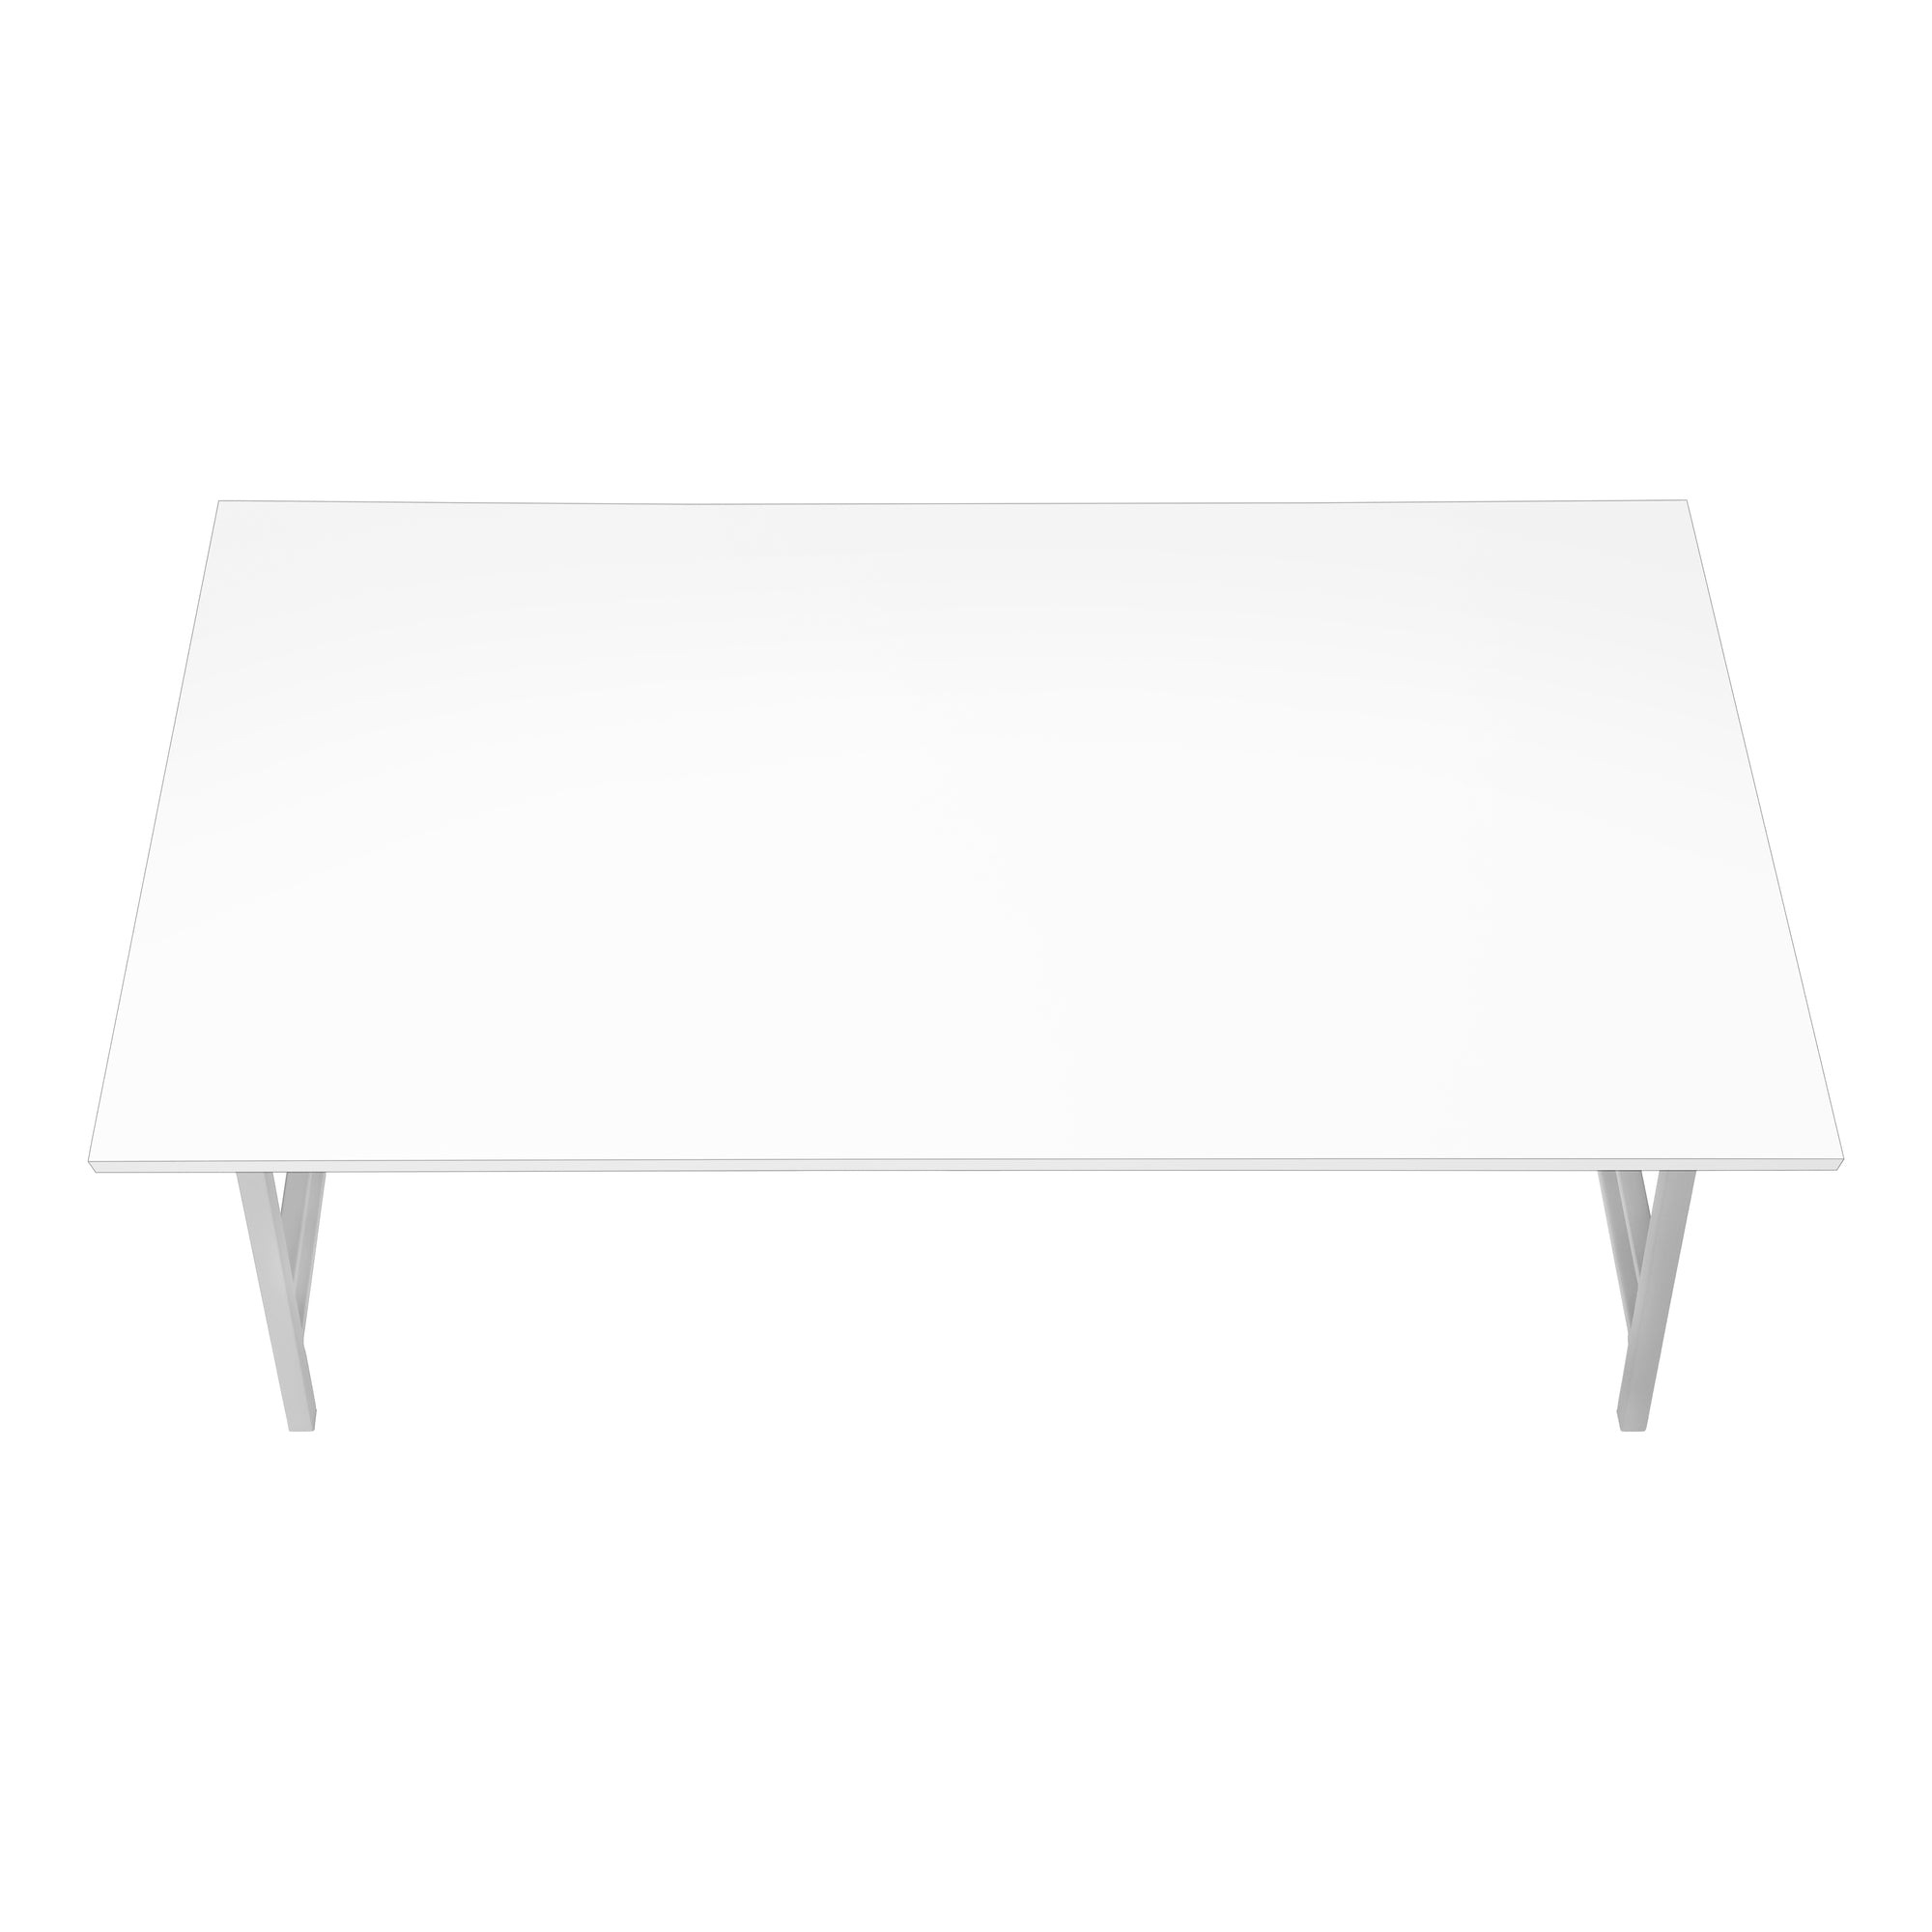 MN-603790    Coffee Table - 40"L / White / Silver Metal